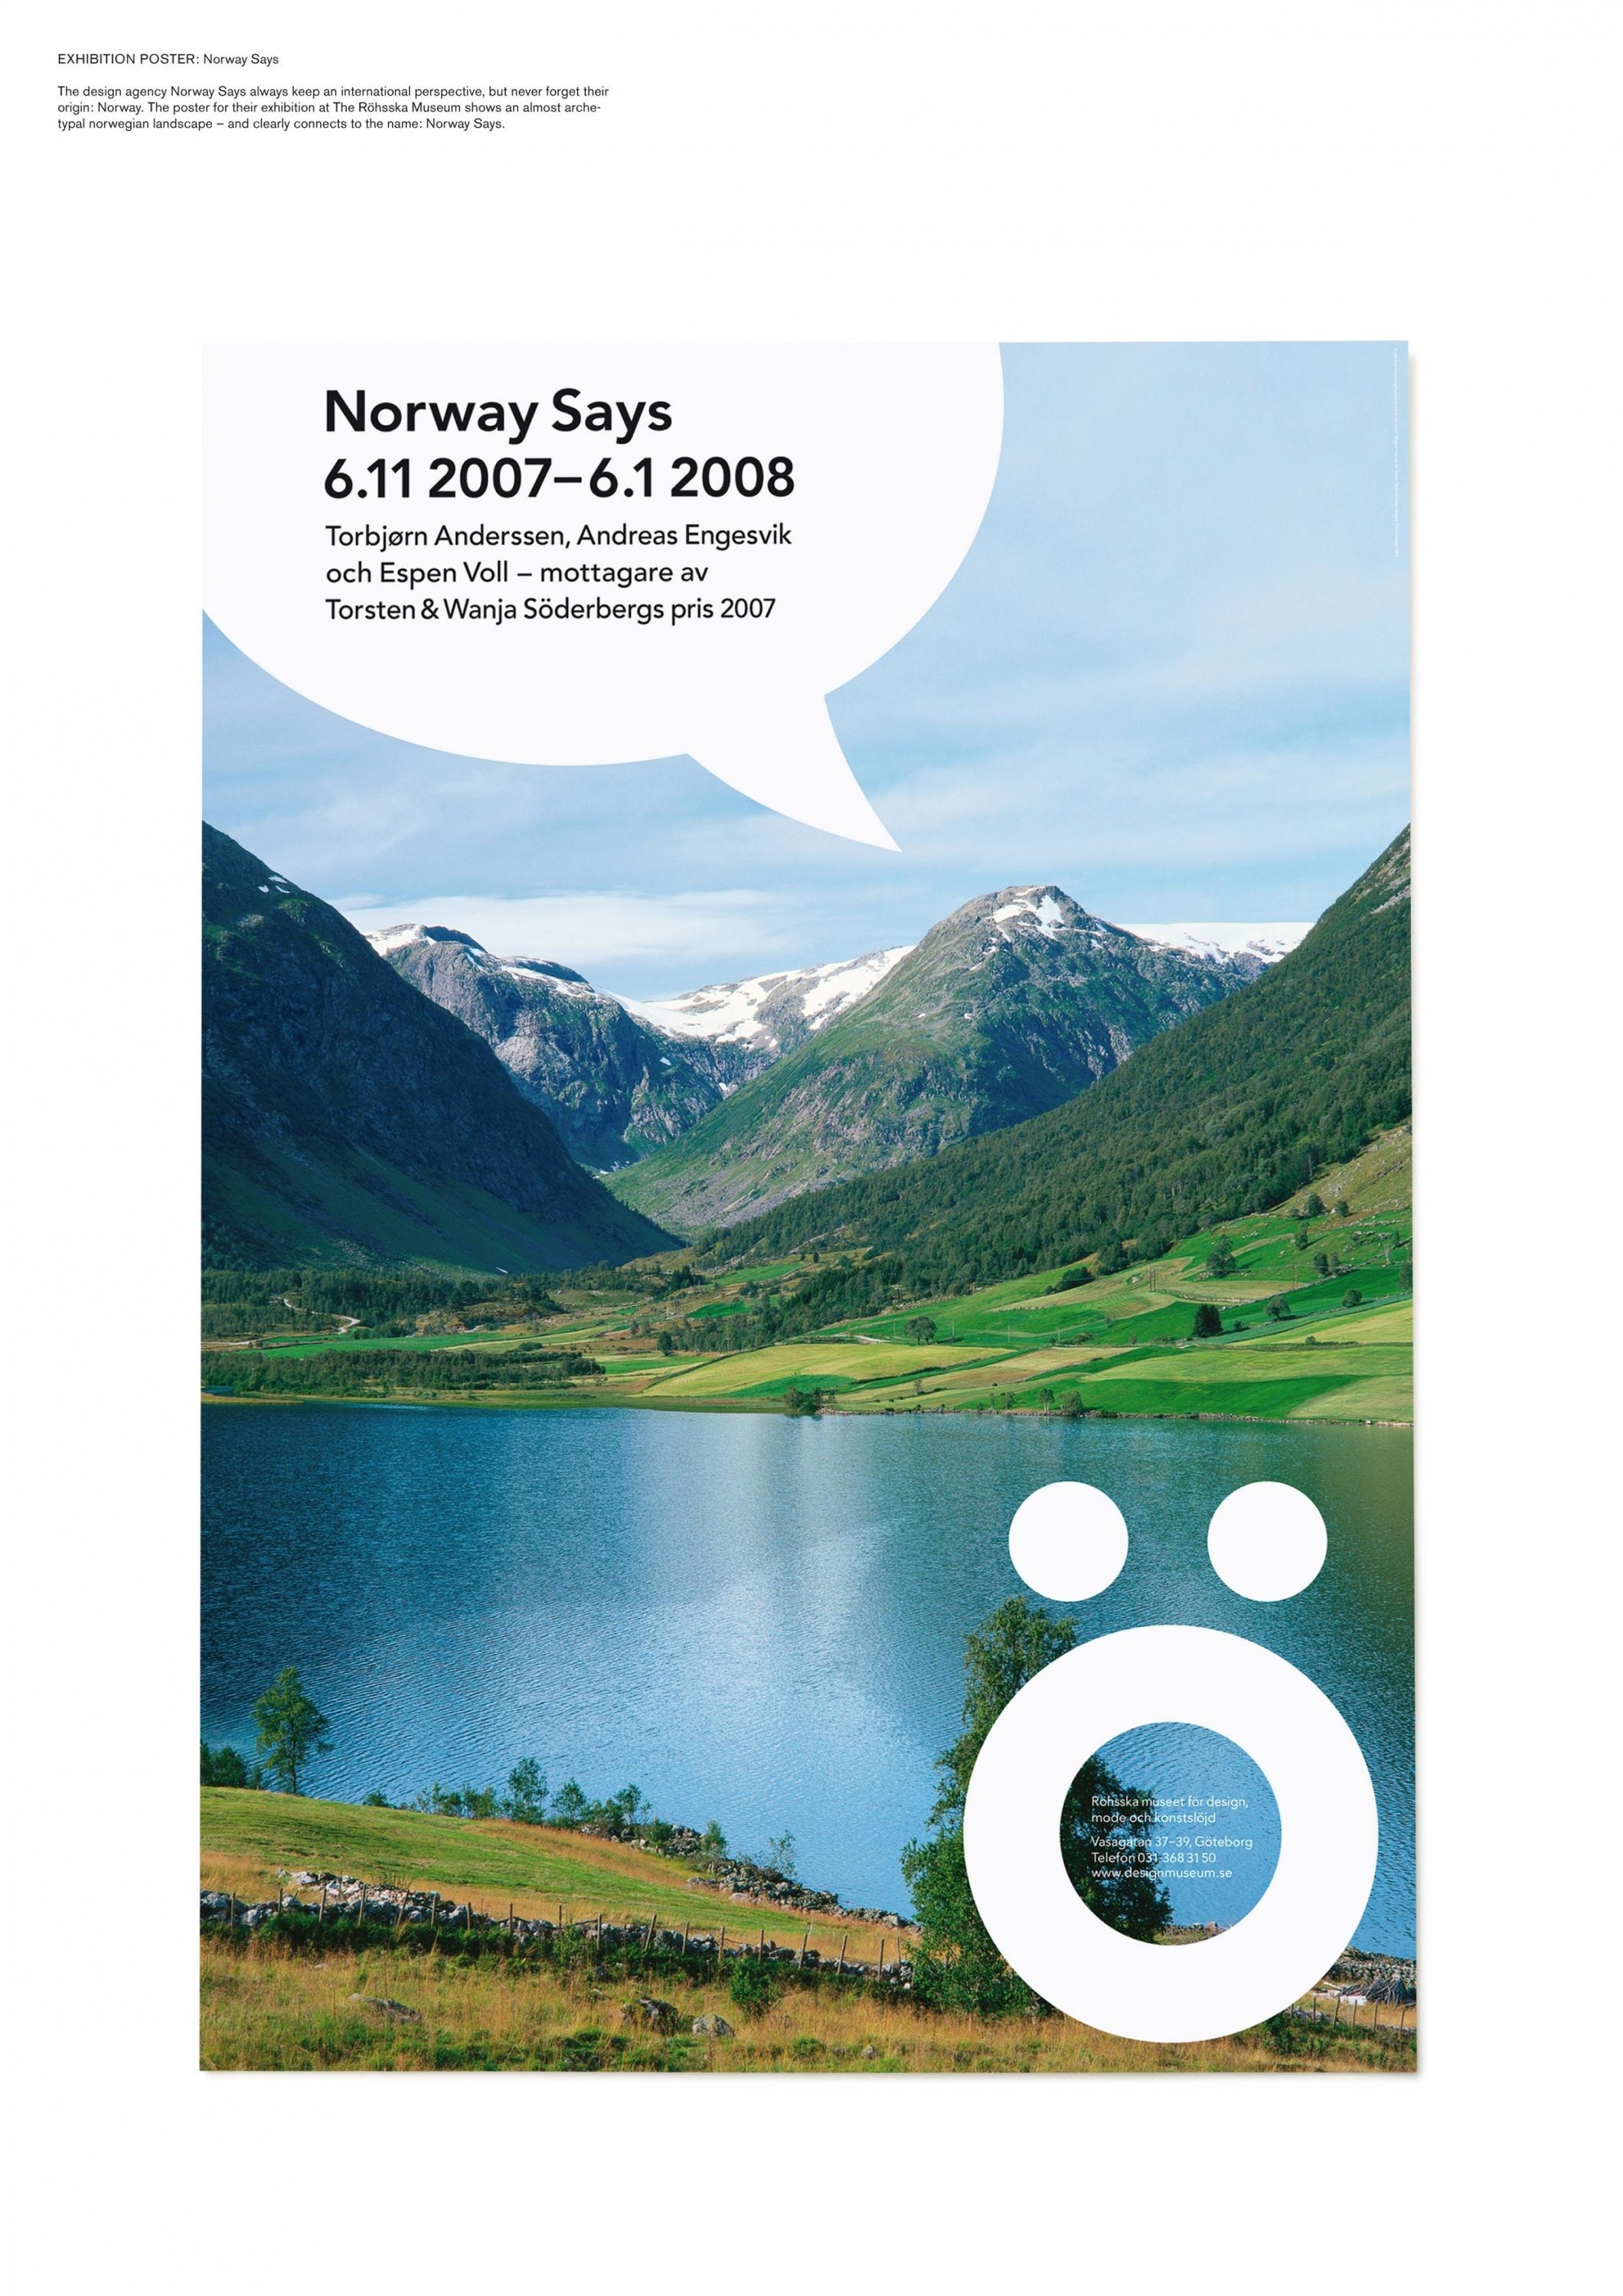 NORWAY SAYS